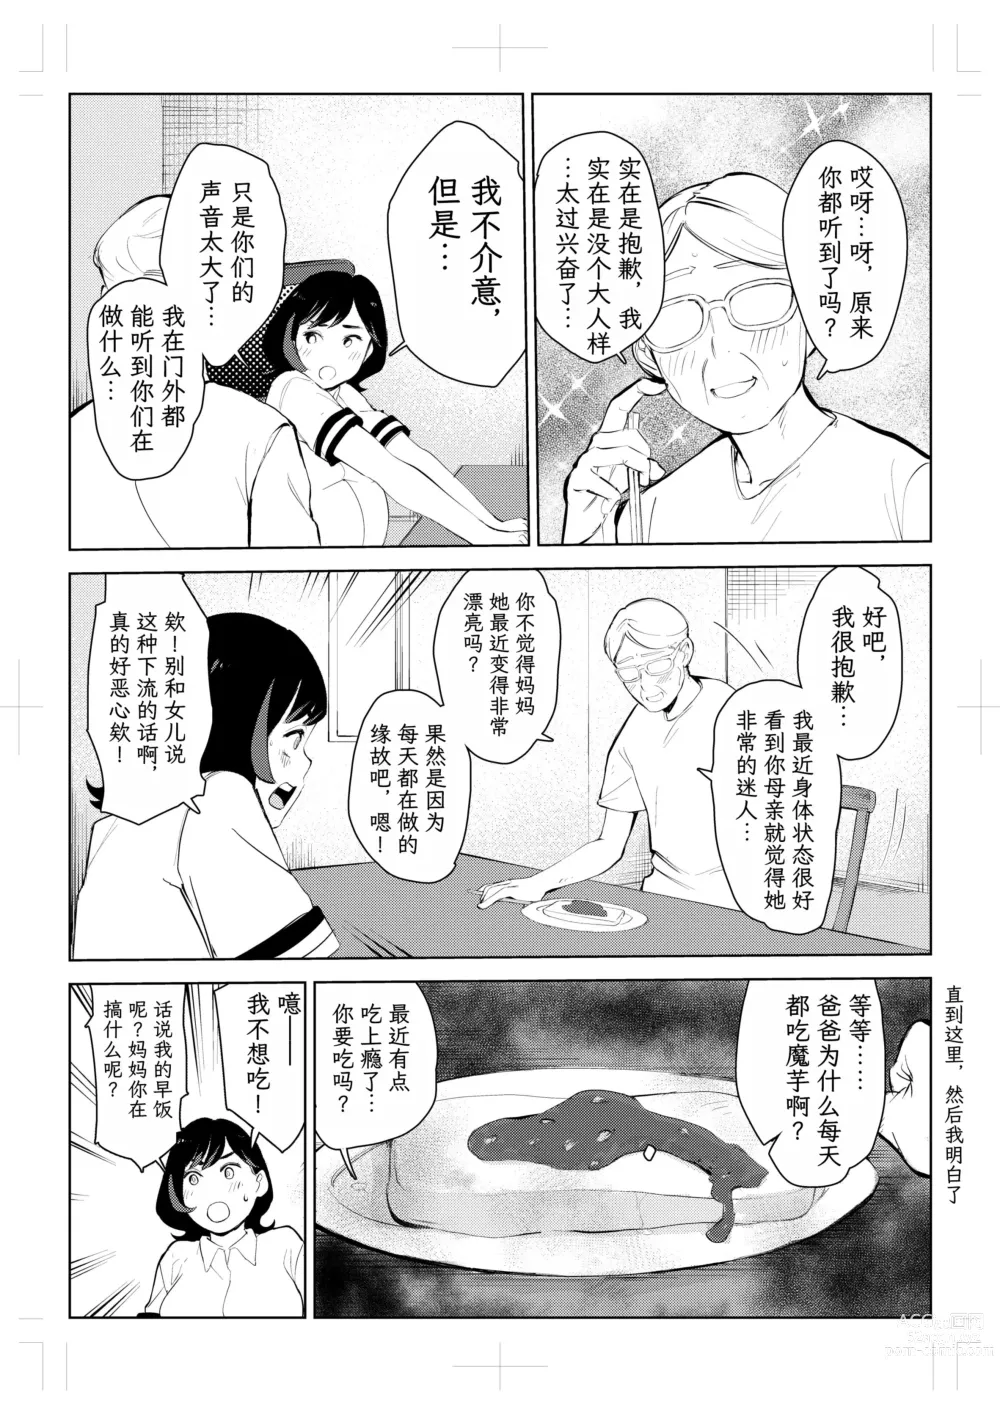 Page 88 of doujinshi 40-sai no Mahoutsukai 4